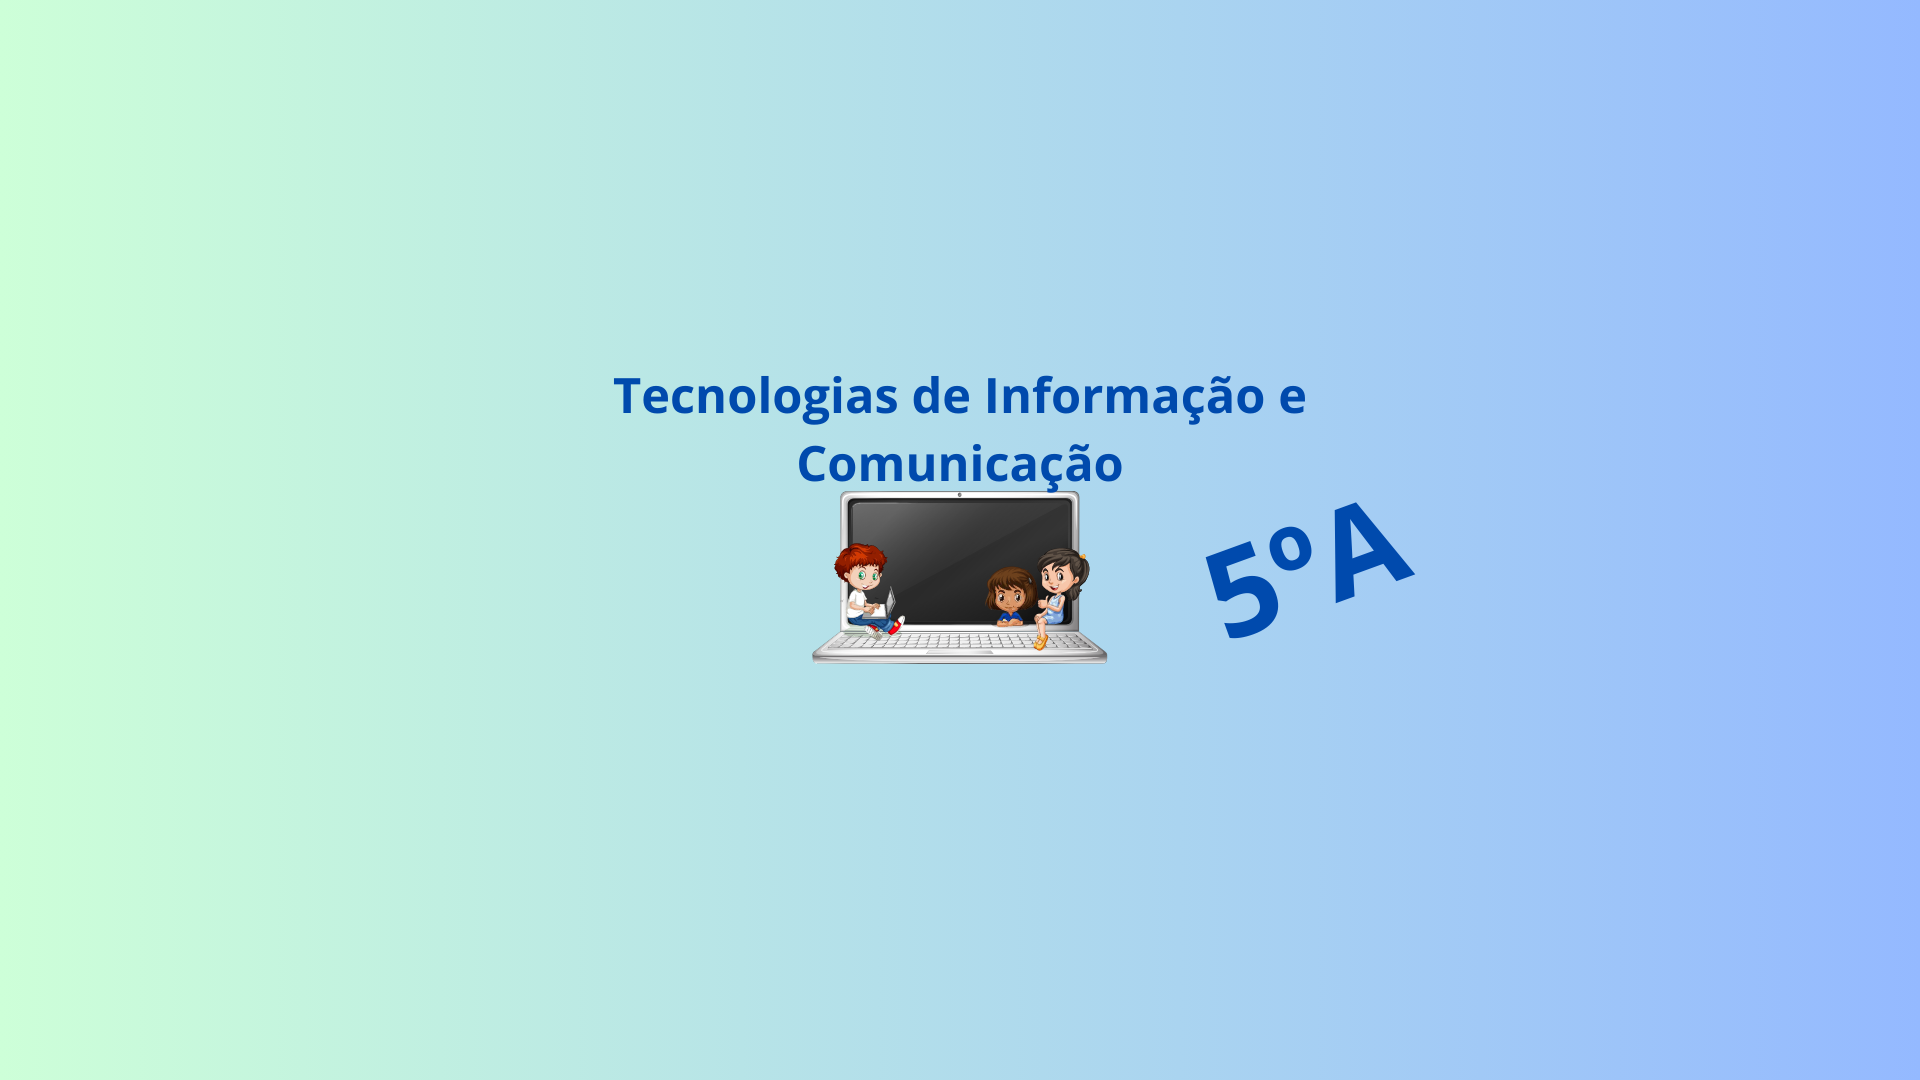 5A - Tecnologias de Informação e Comunicação